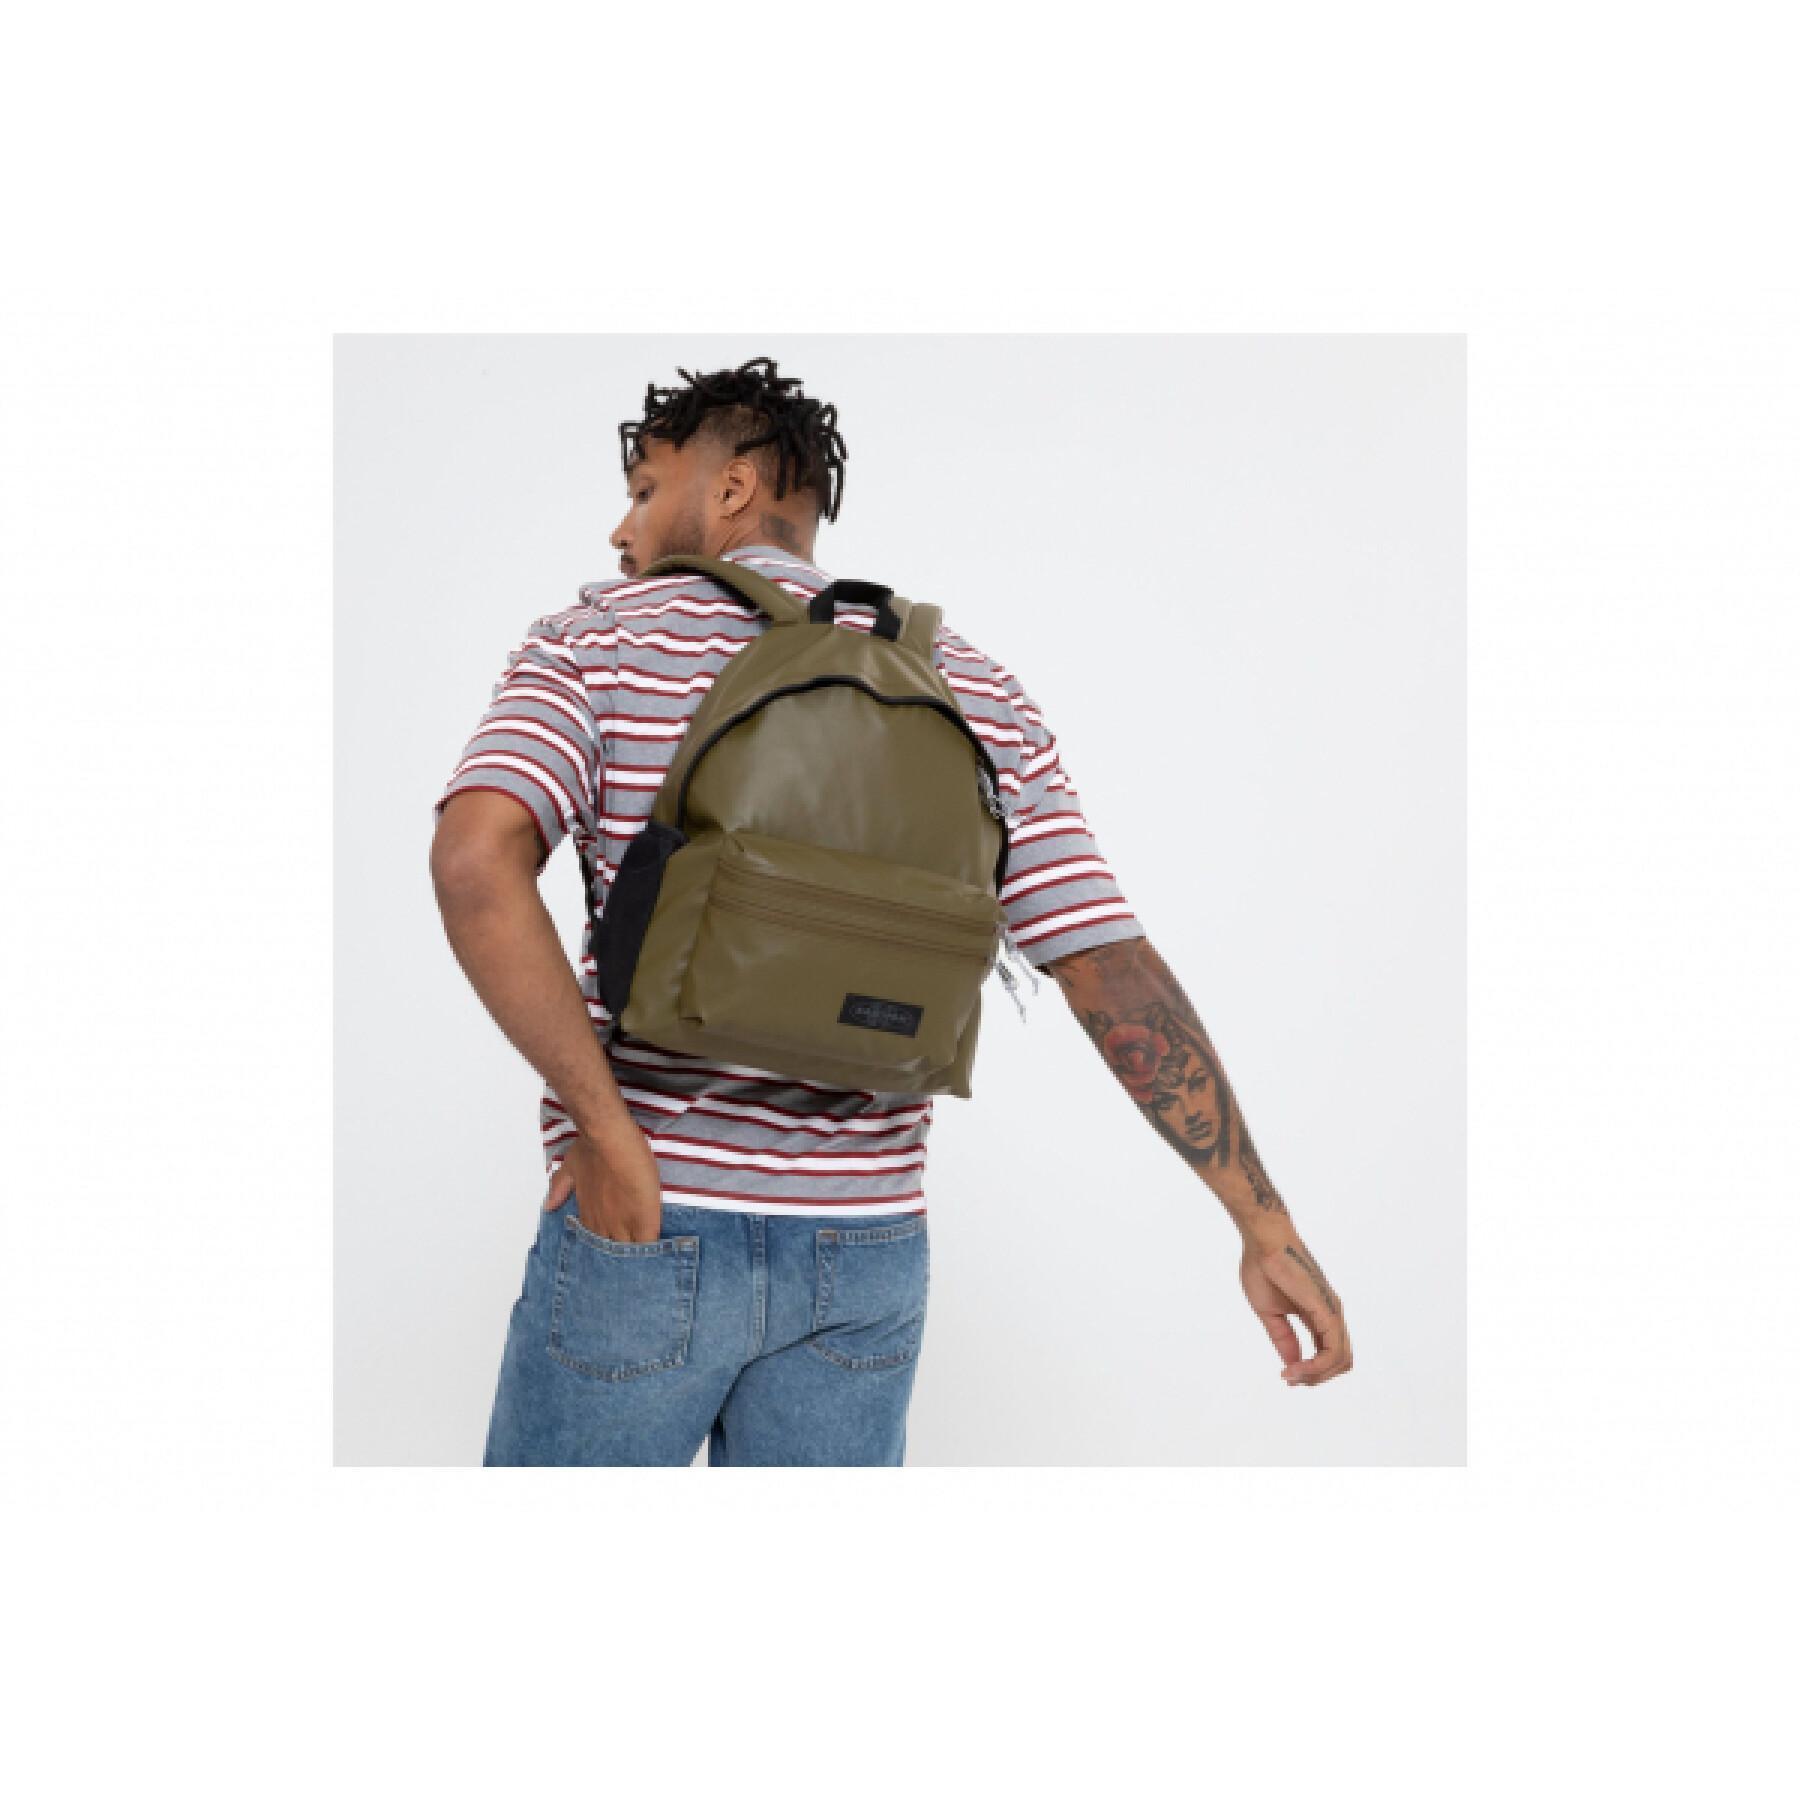 Backpack Eastpak Padded Zippl'r +